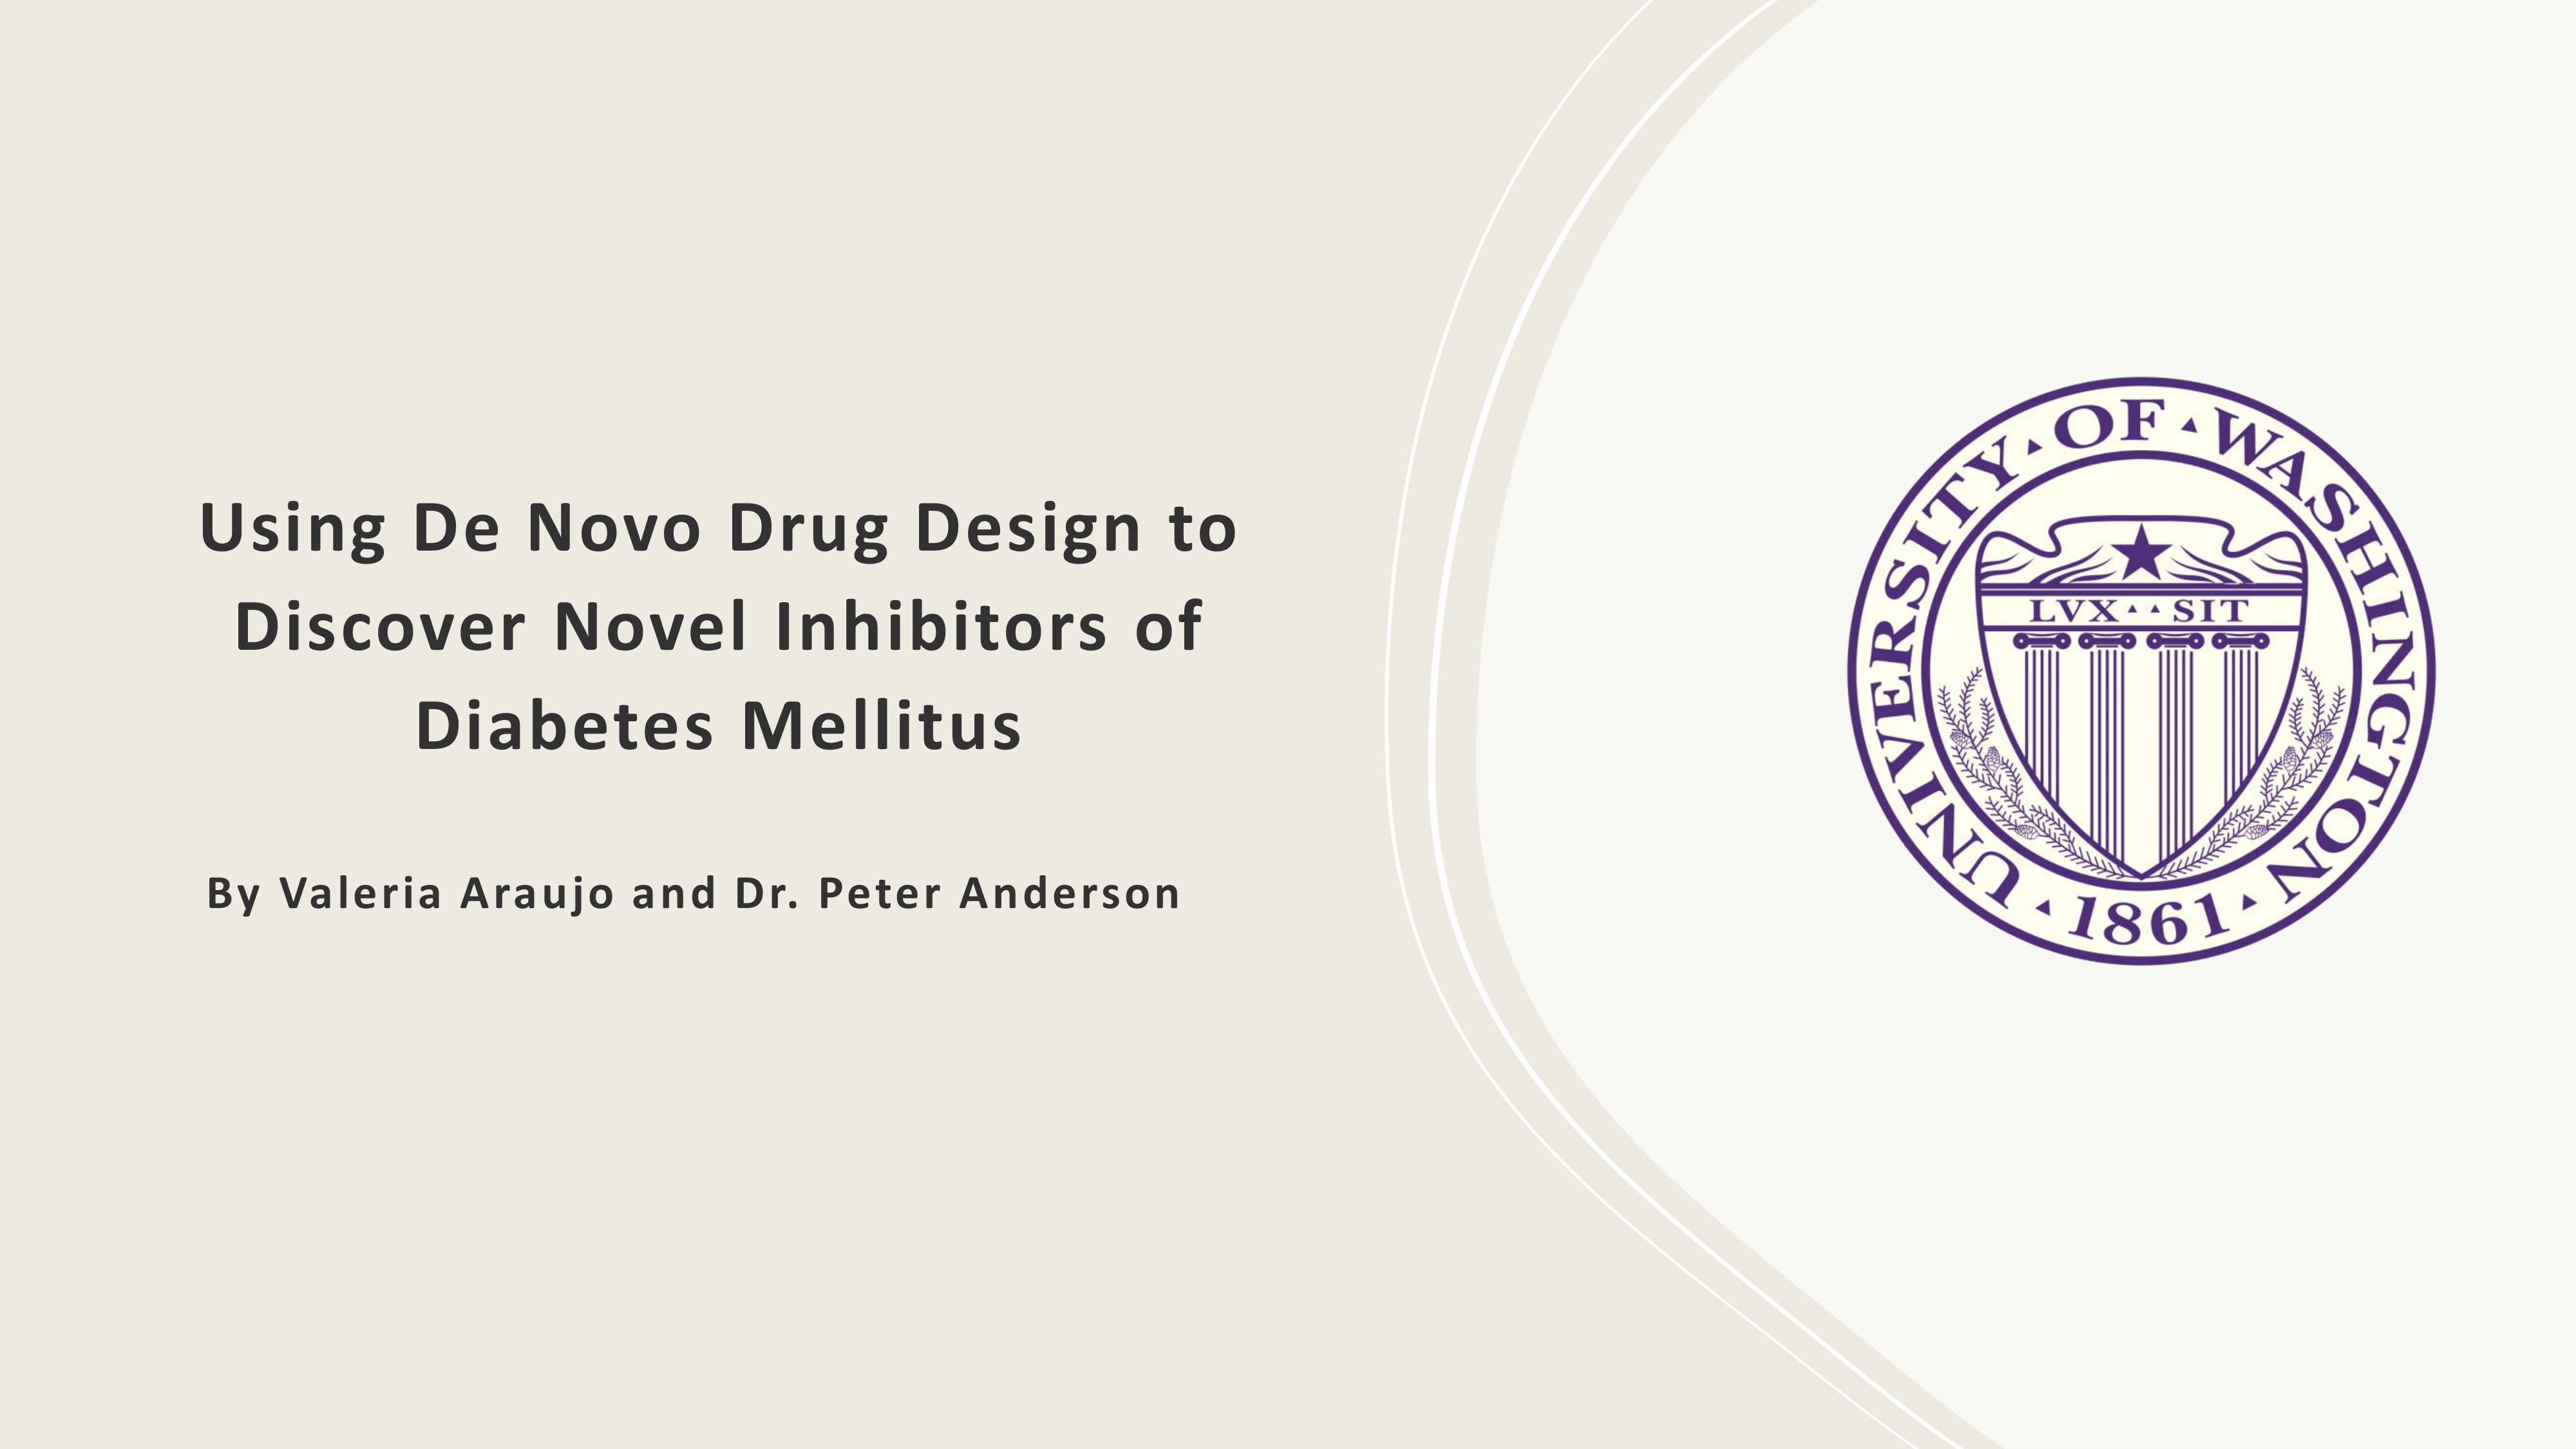 Using De Novo Drug Design to Discover Novel Inhibitors of Diabetes Mellitus Poster